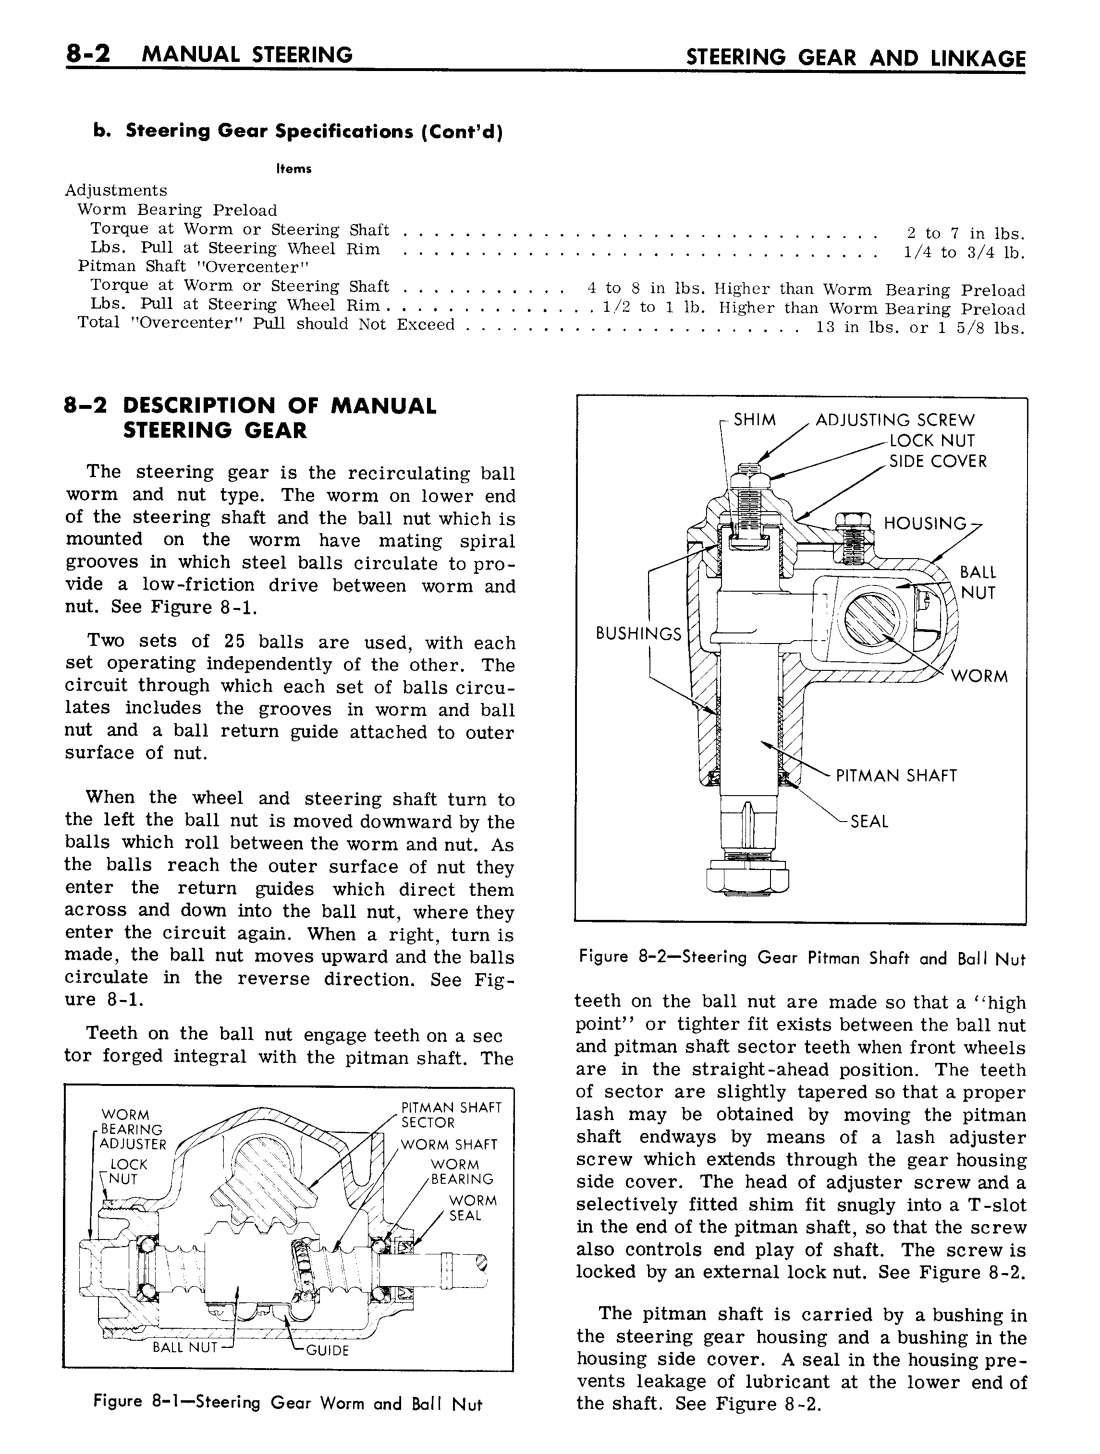 n_08 1961 Buick Shop Manual - Steering-002-002.jpg